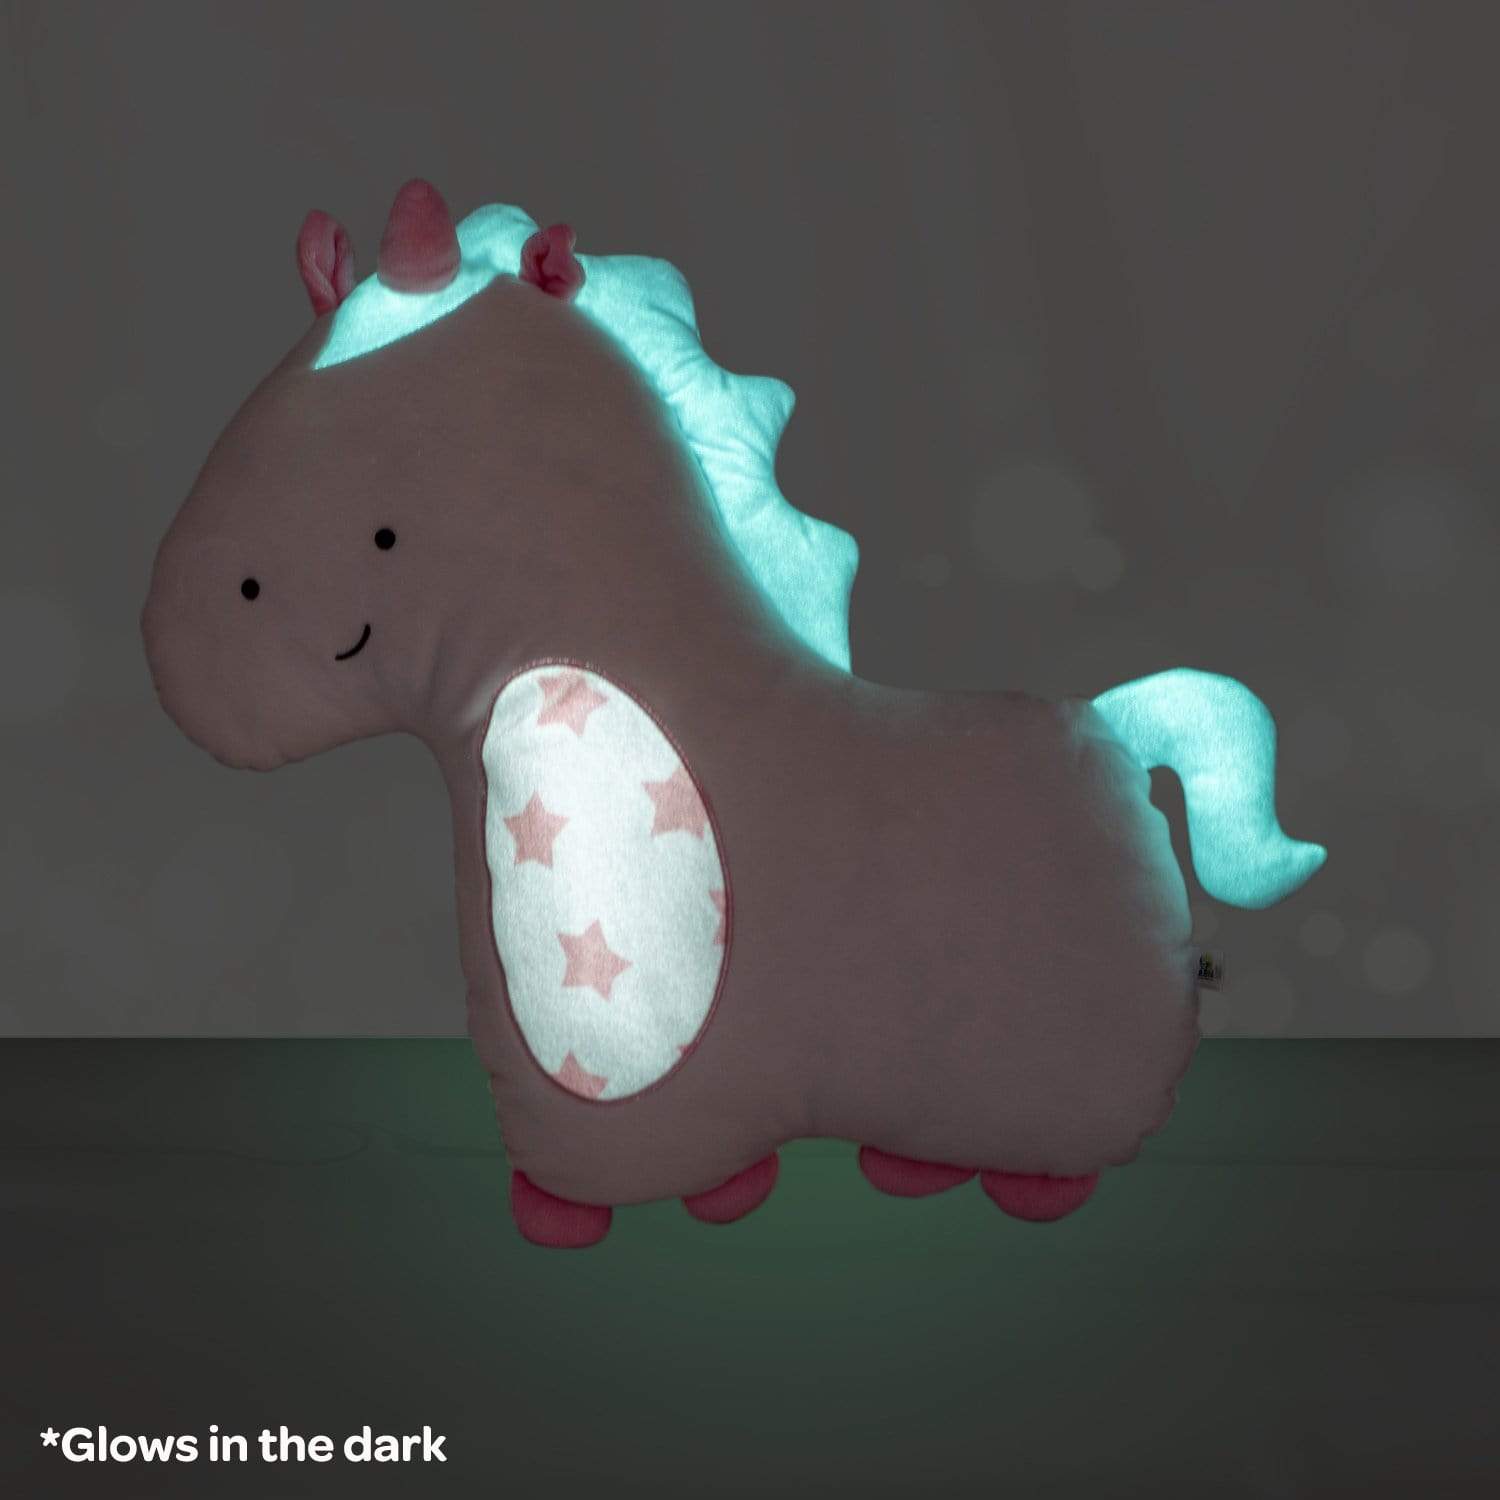 Adora Snuggle & Glow Unicorn Stuffed Animal, Reversible Glow-in-the-Dark Pet